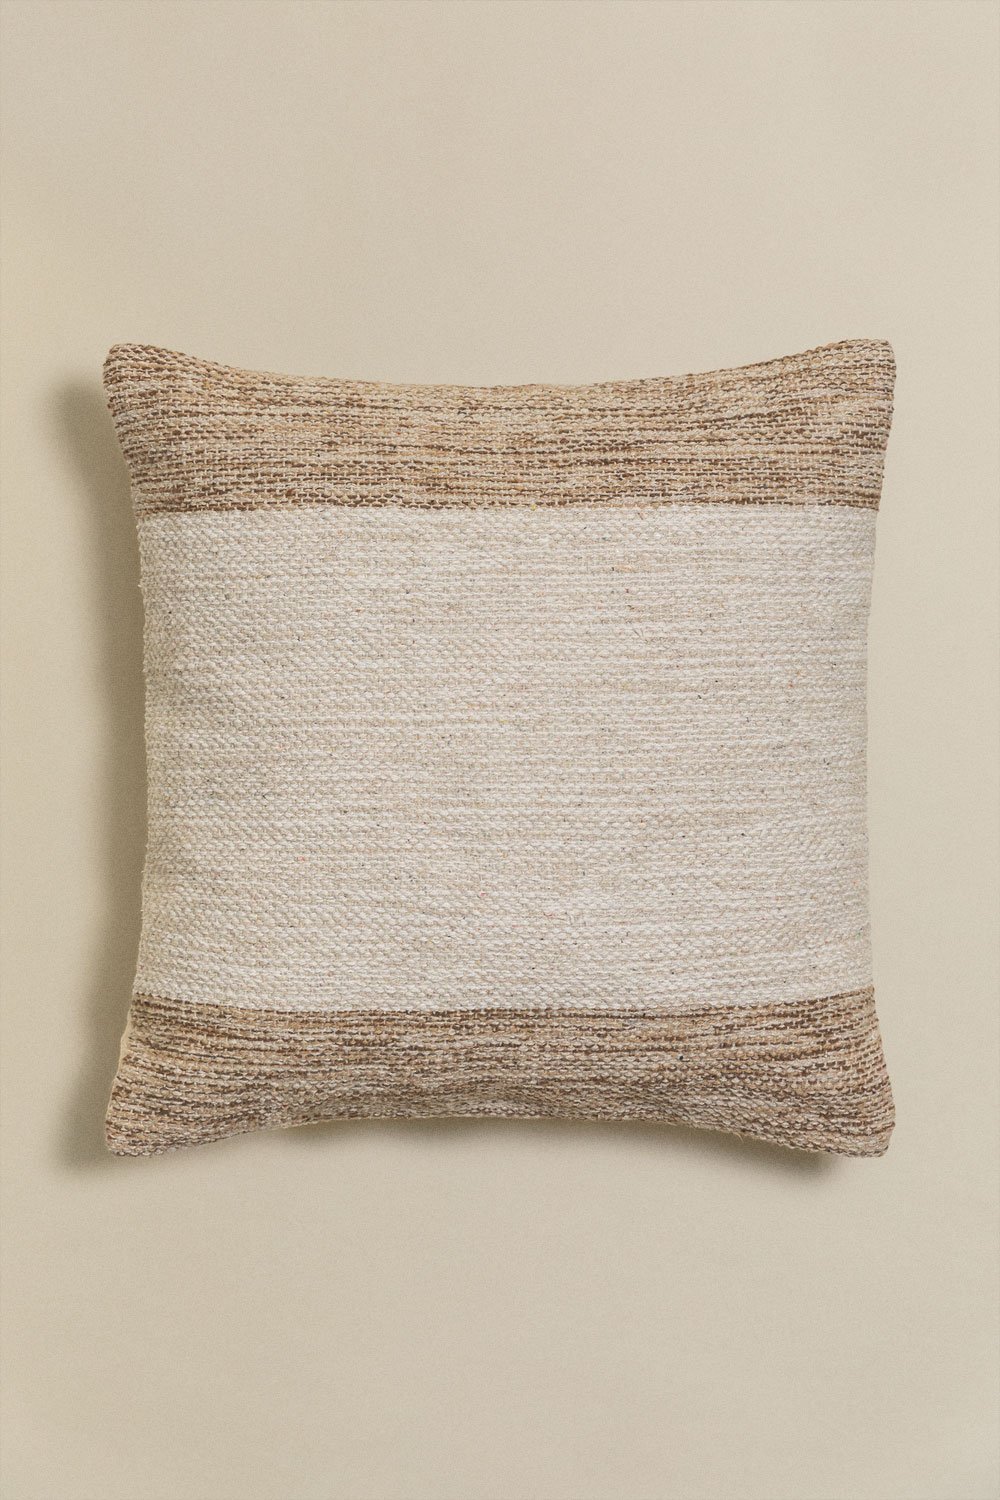 Cuscino quadrato in cotone (45x45 cm) Mayniel, immagine della galleria 1